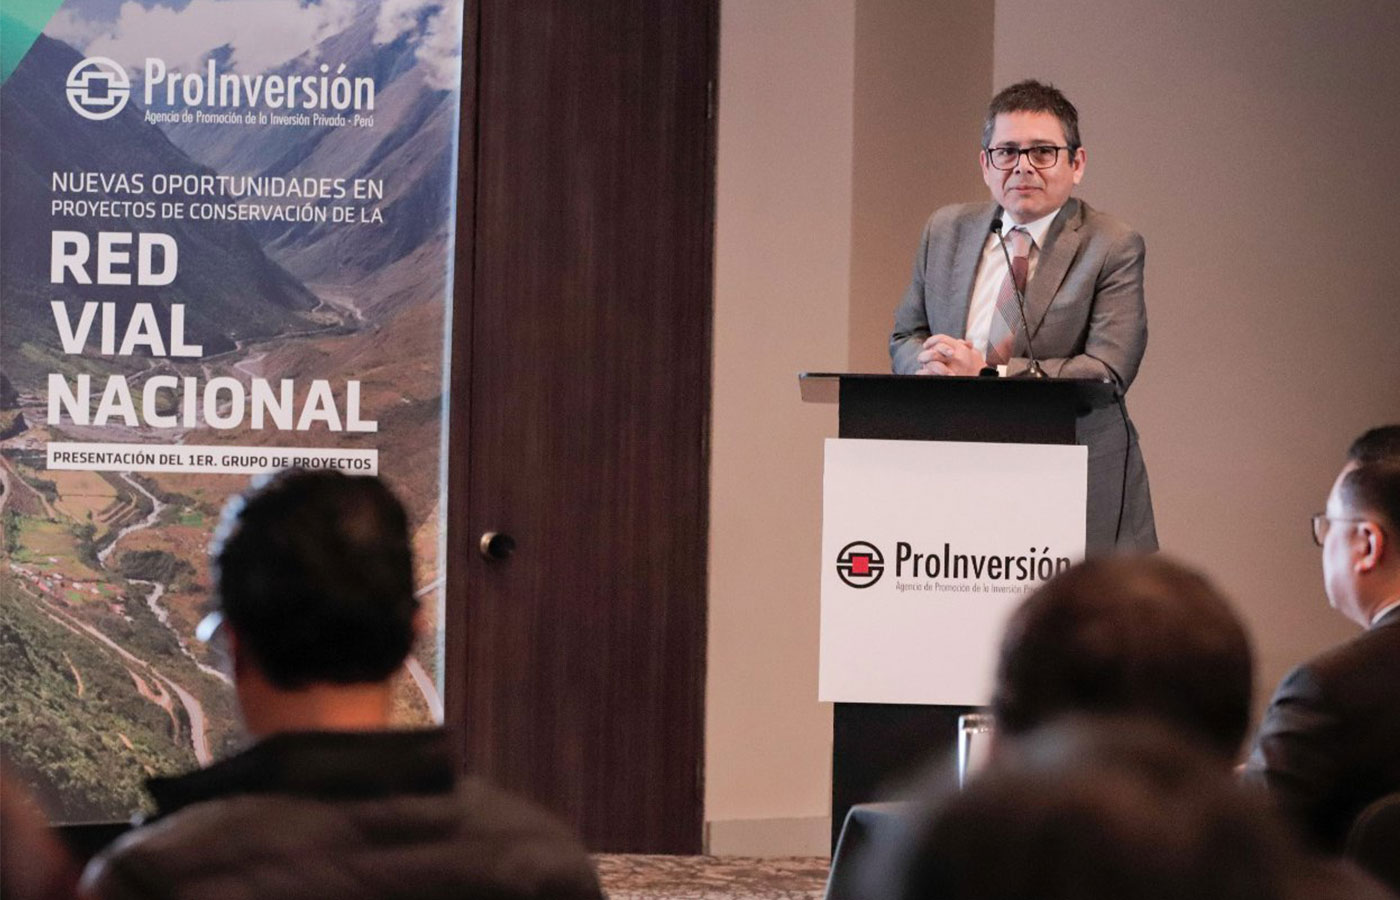 Perú: Proinversión presenta siete proyectos de conservación vial a inversionistas